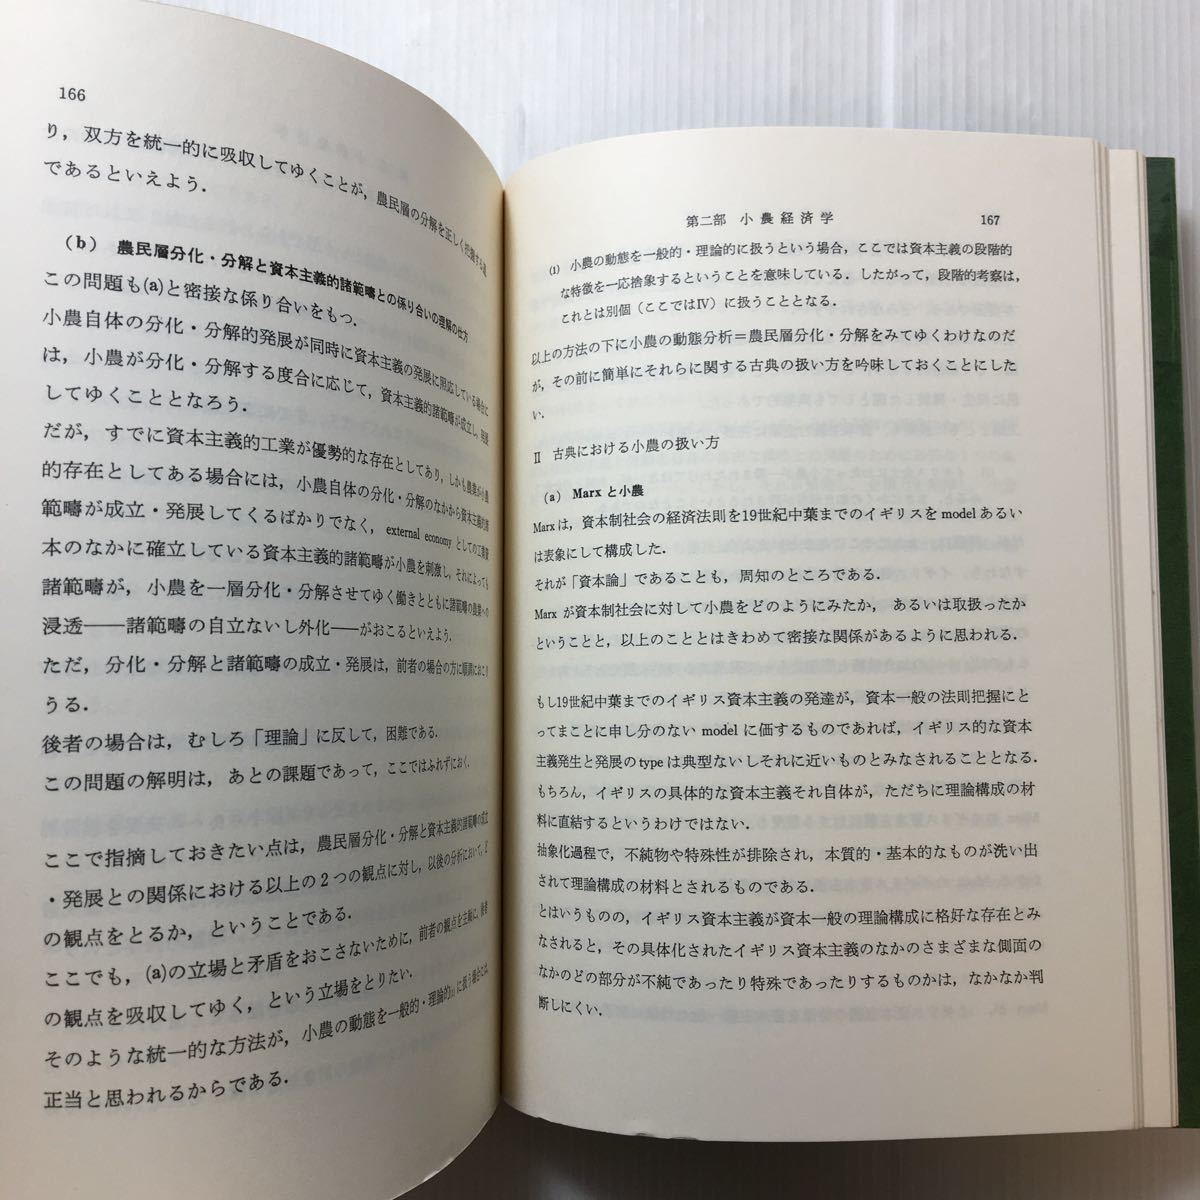 zaa-203♪小農経済学 (1970年) 古書, 1972/4/15　石渡 貞雄 (著)　亜紀書房